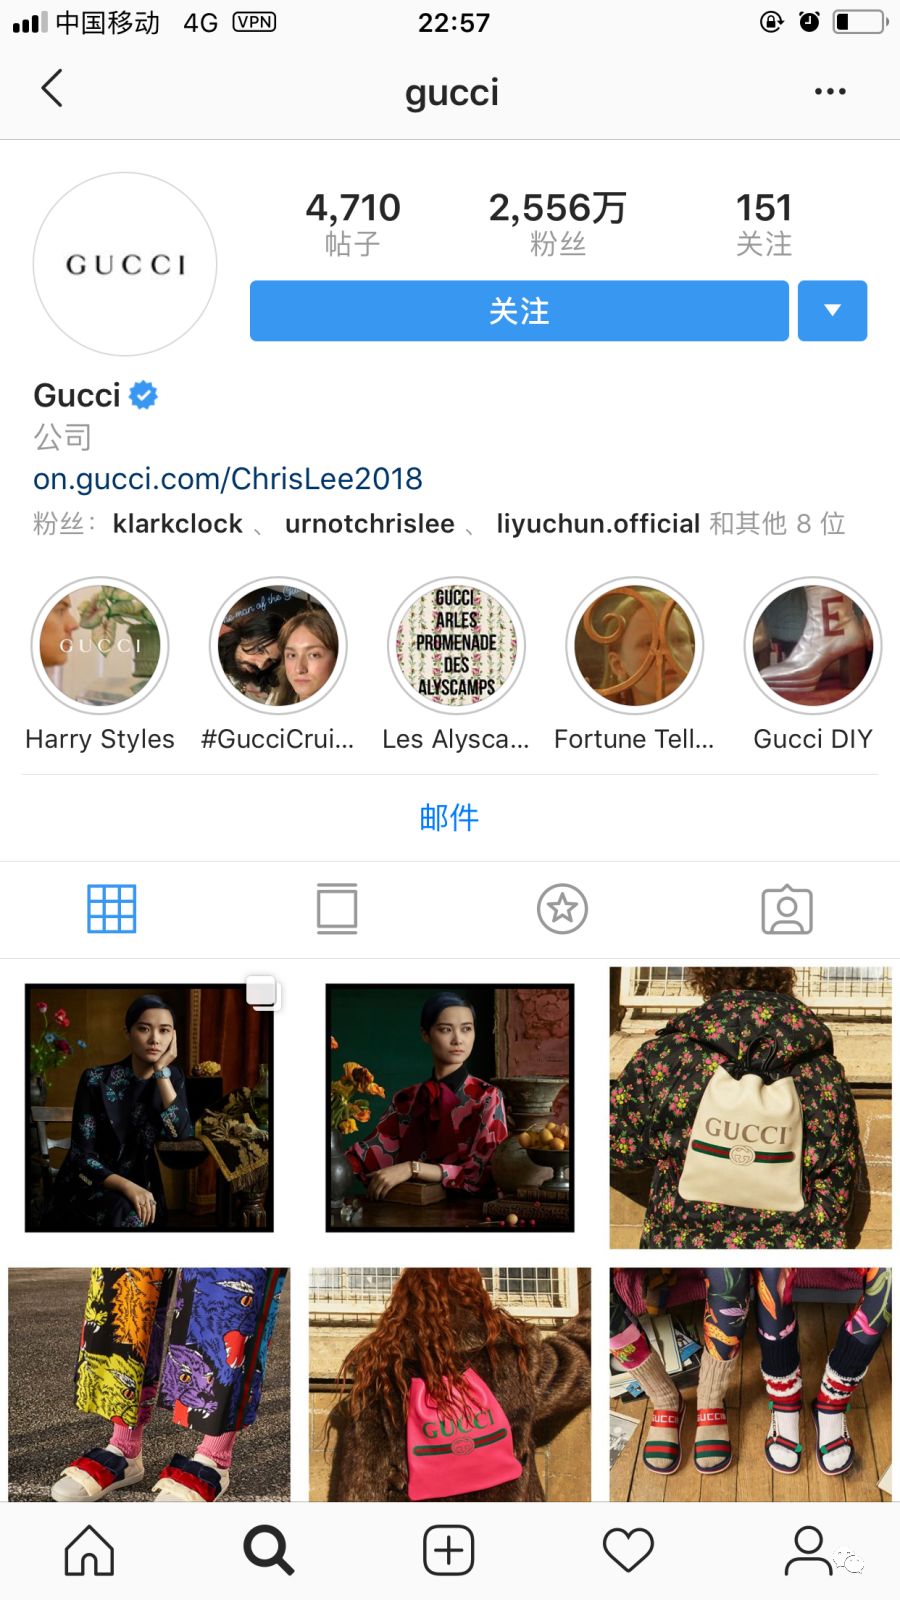 Gucci的100亿欧元销售野心,为何敢压在李宇春